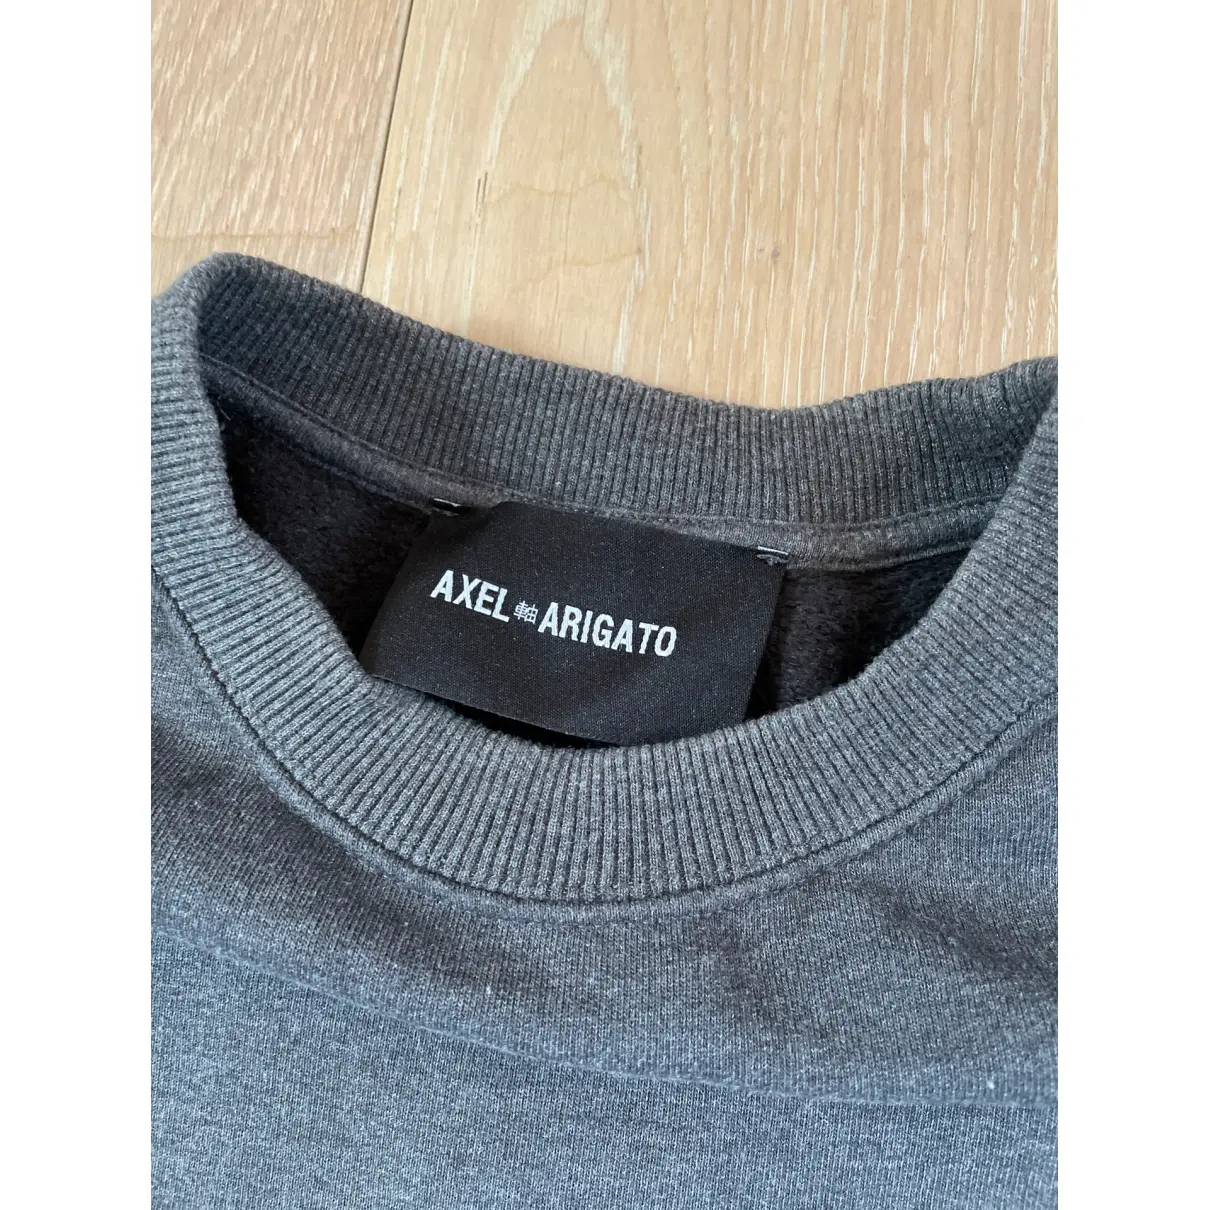 Buy Axel Arigato Sweatshirt online